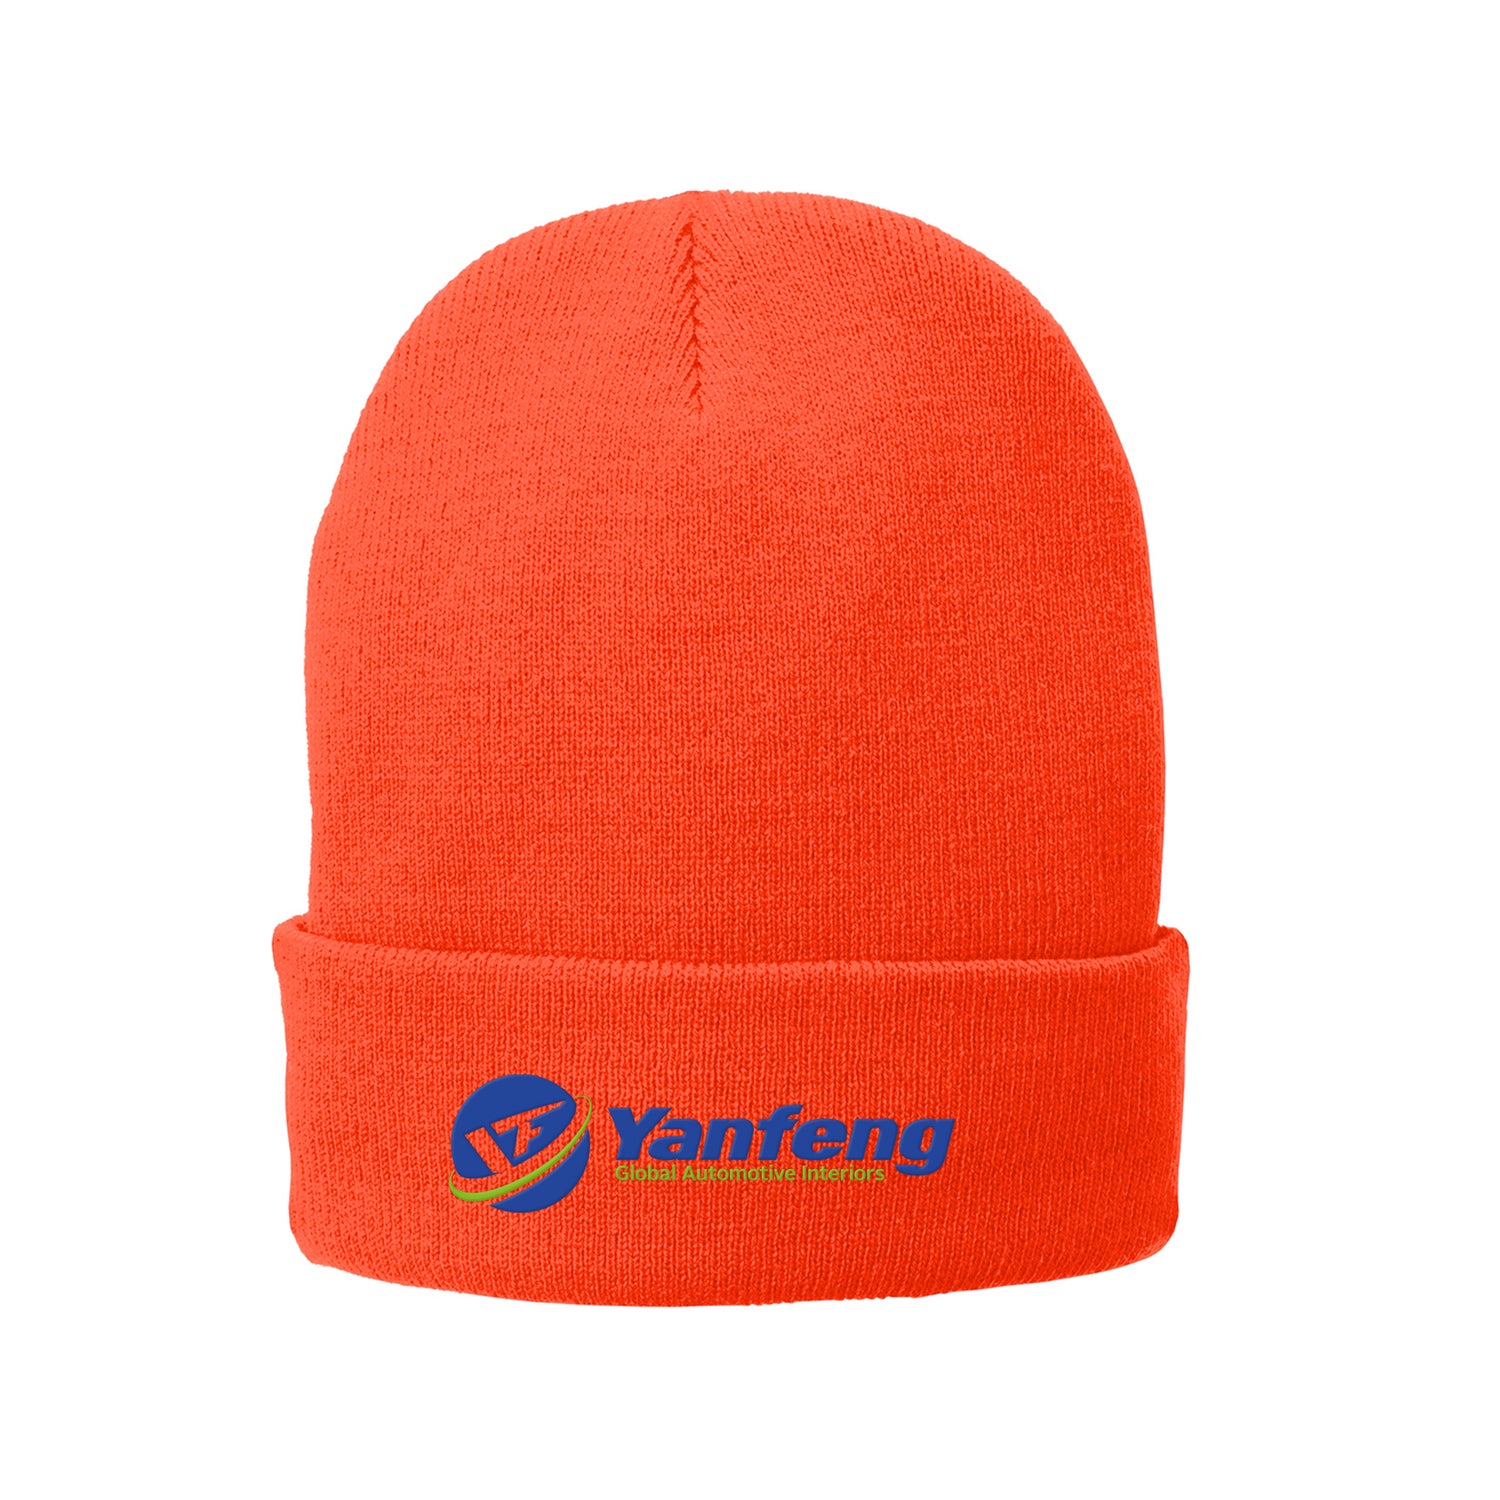 Yanfeng | Fleece-Lined Knit Cap